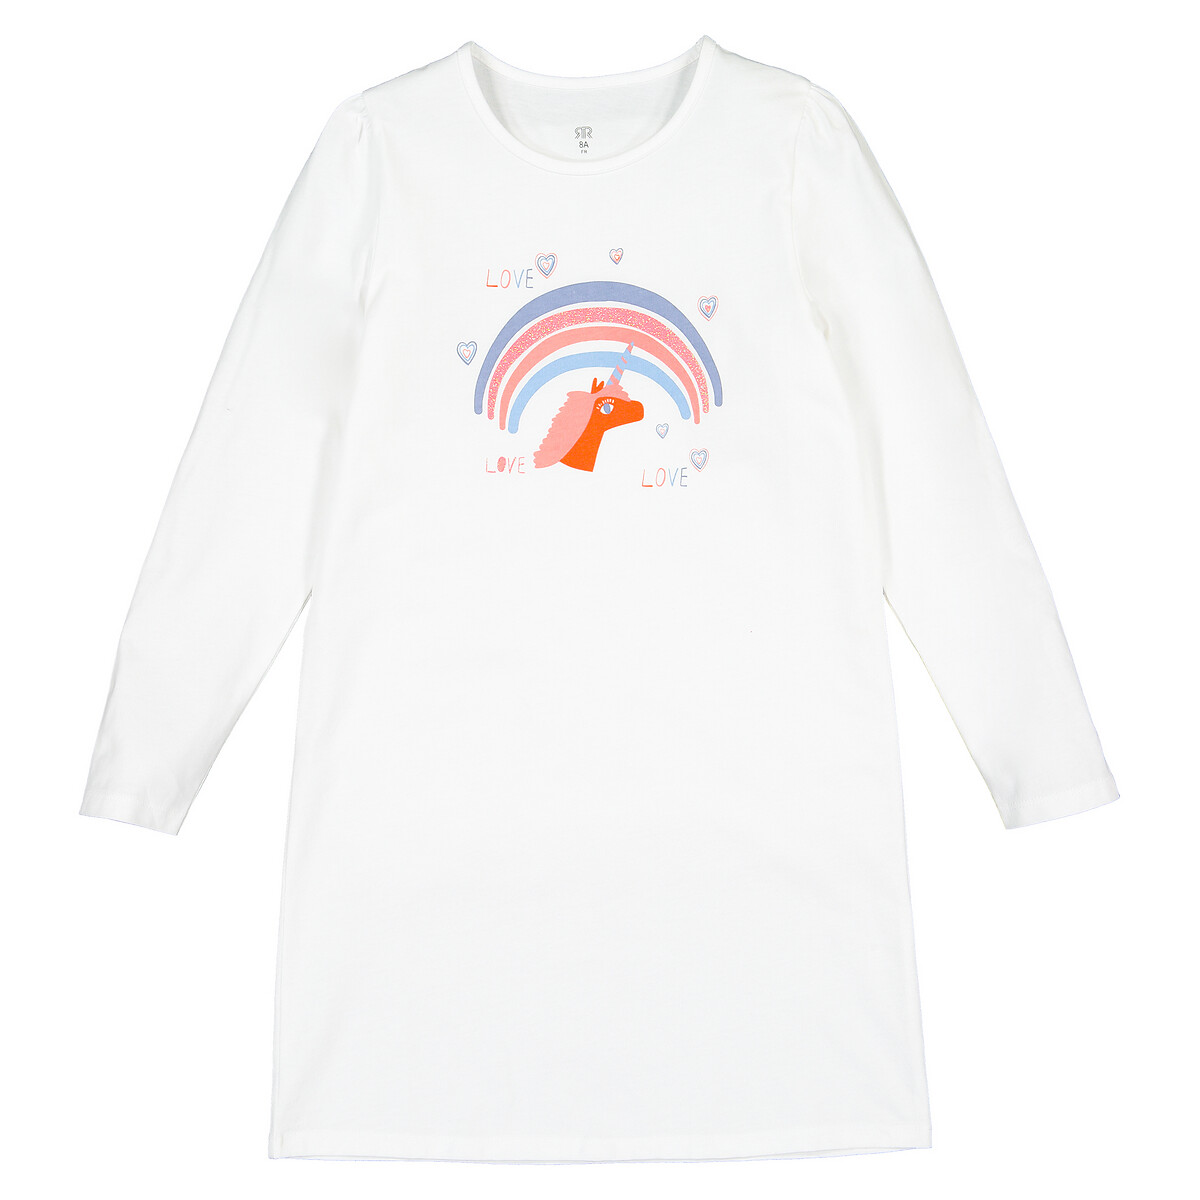 Рубашка La Redoute Ночная 100 биохлопок 3-12 лет 8 лет - 126 см бежевый, размер 8